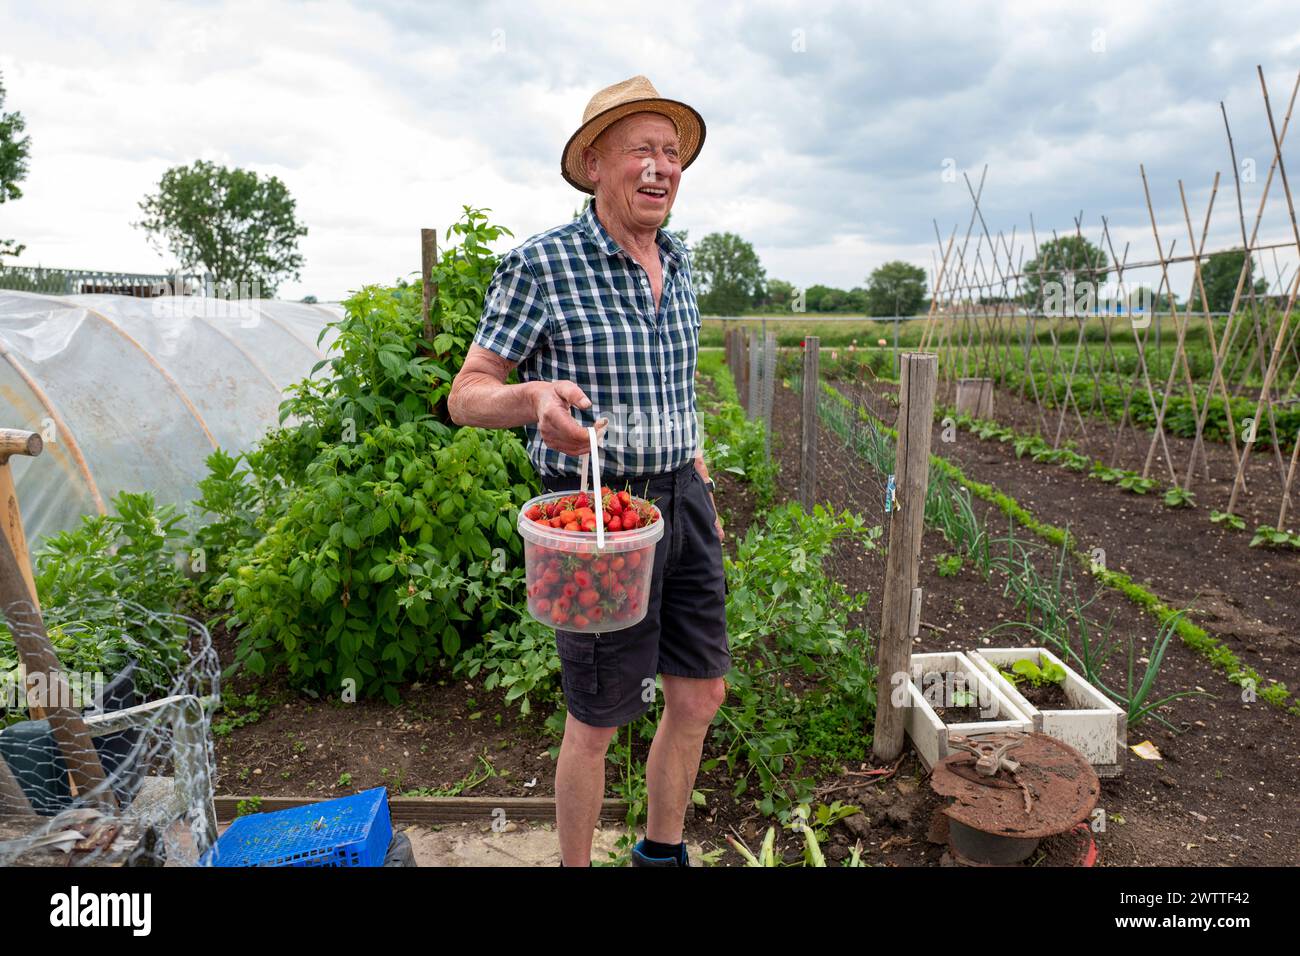 Ein älterer Mann hält stolz einen Eimer frisch gepflückter Tomaten in einem lebendigen, grünen Garten. Stockfoto